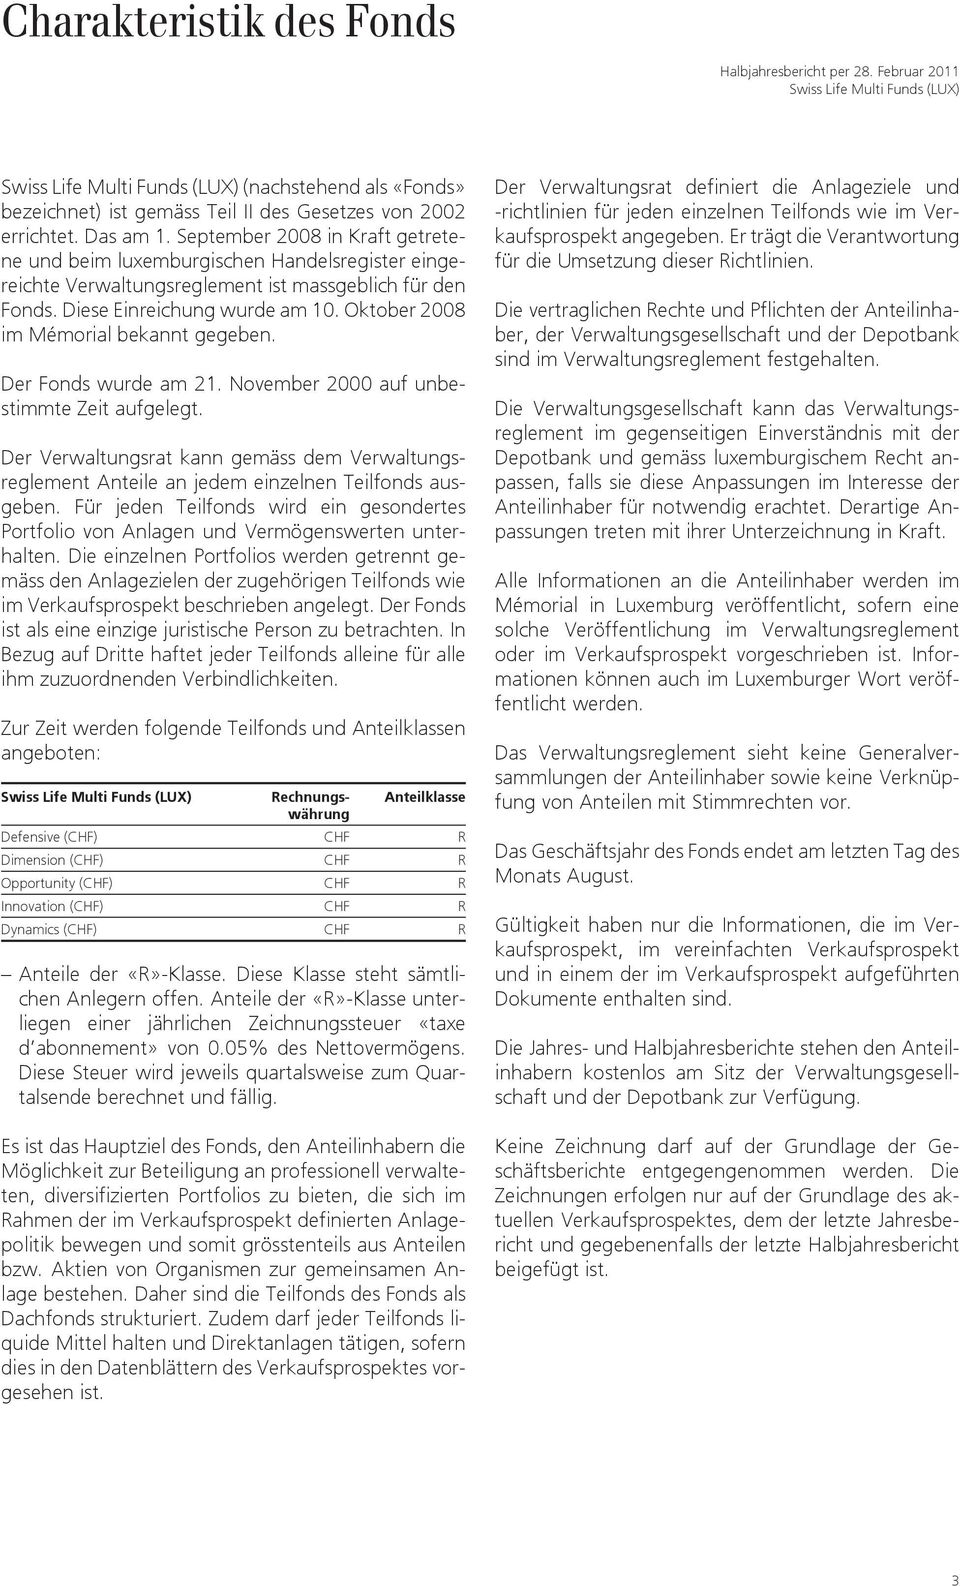 September 2008 in Kraft getretene und beim luxemburgischen Handelsregister eingereichte Verwaltungsreglement ist massgeblich für den Fonds. Diese Einreichung wurde am 10.